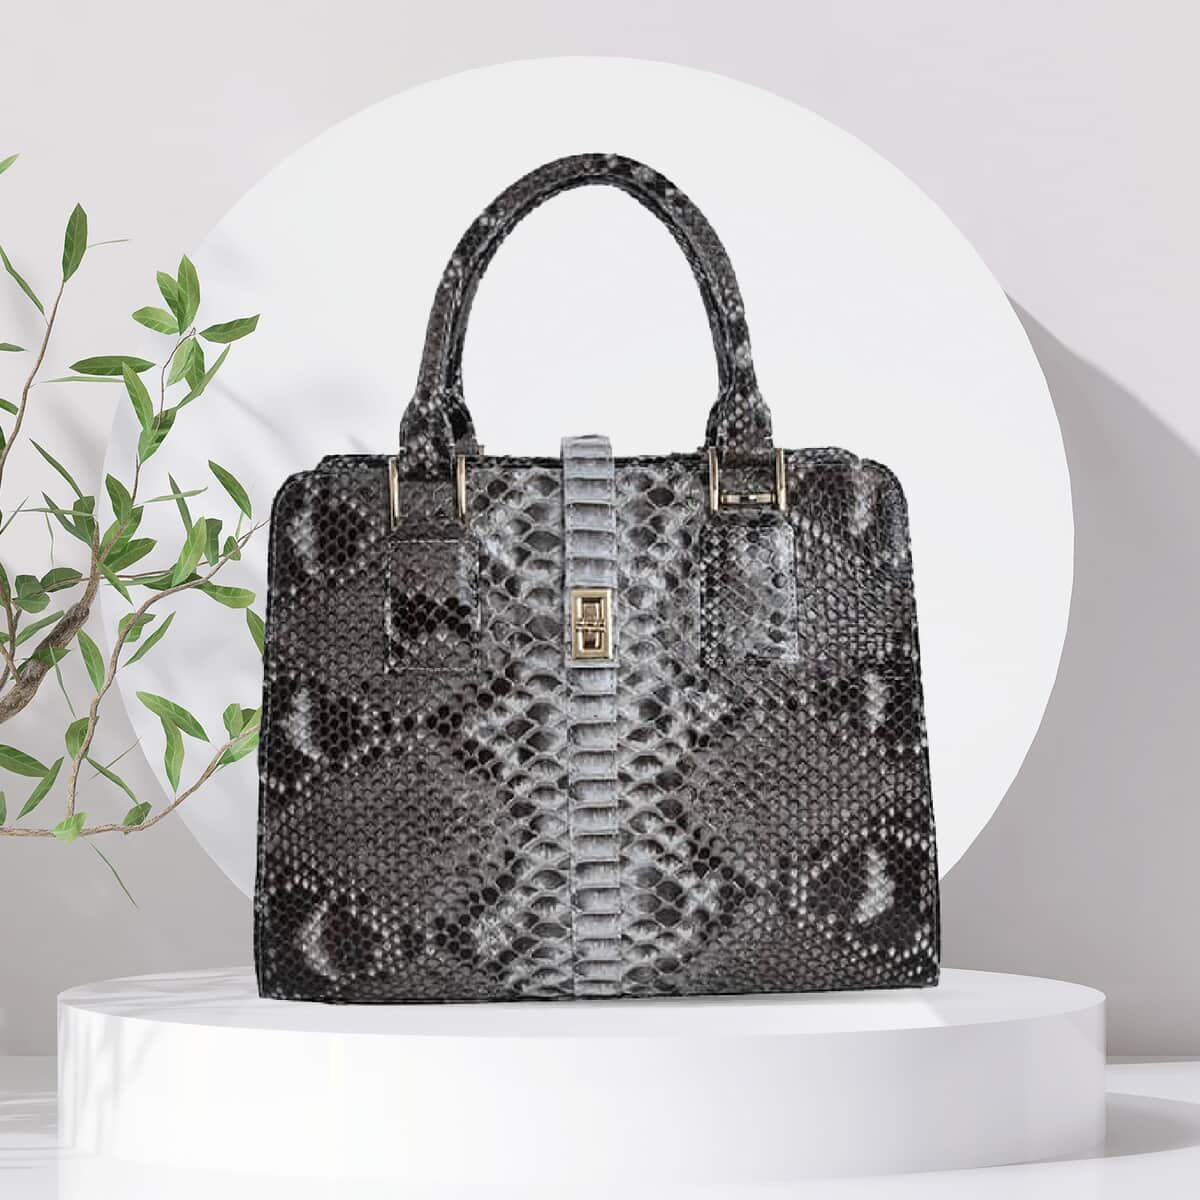 The Pelle Python Skin Bag Collection Natural Color 100% Genuine Python Leather Tote Bag, Shoulder Handbag, Designer Tote Bag For Women image number 1